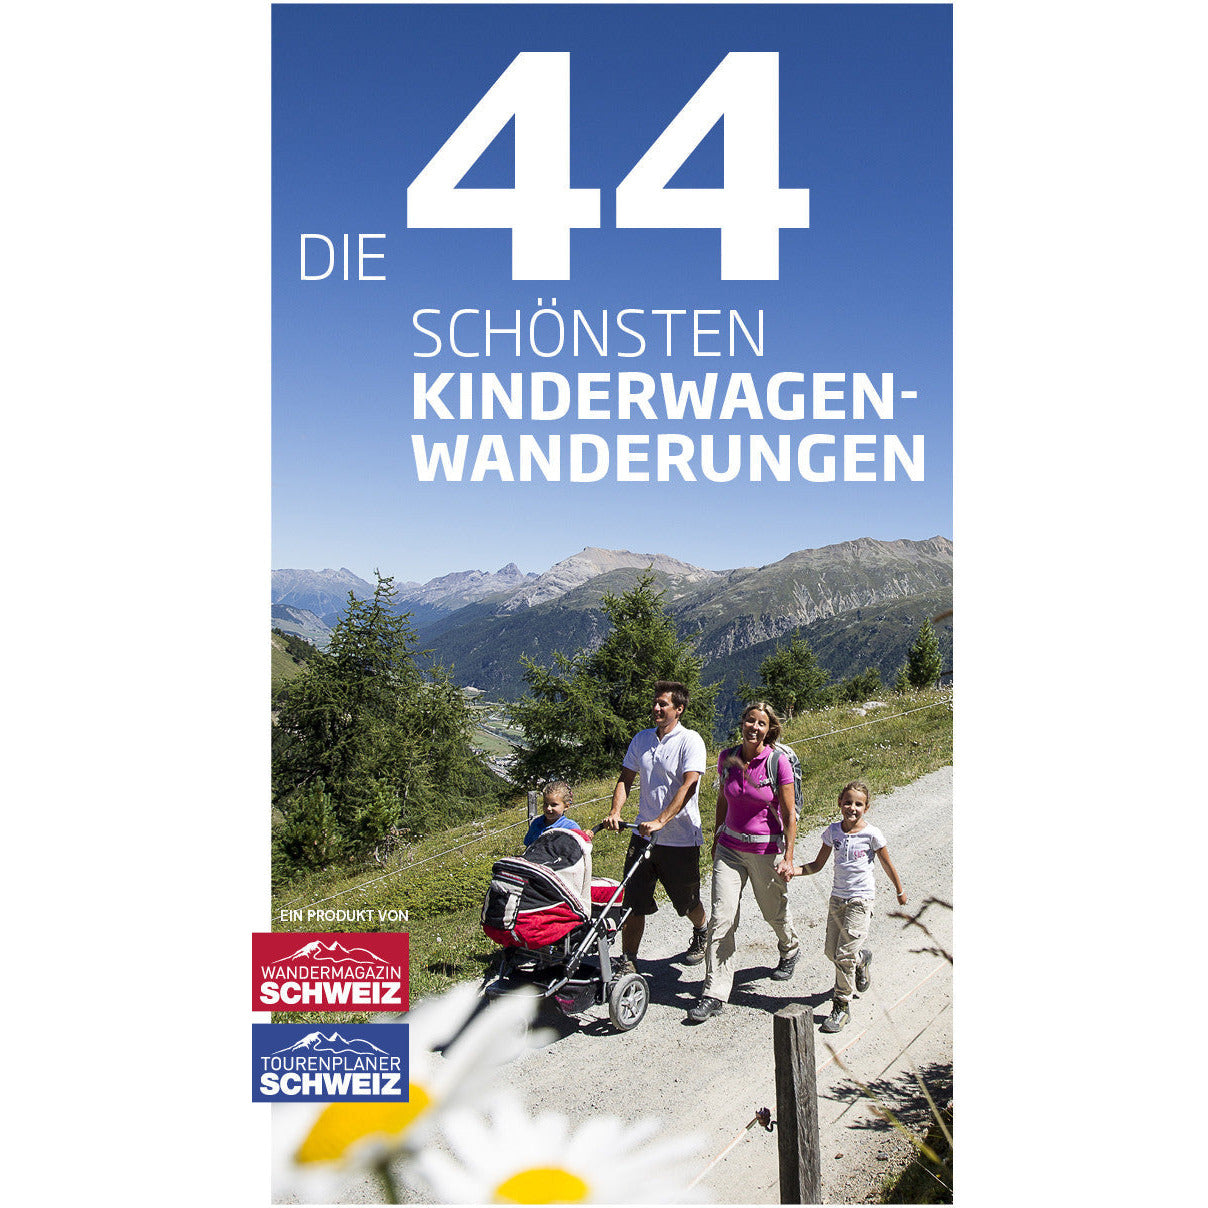 Die 44 schönsten Kinderwagen-Wanderungen Wandershop Schweiz 